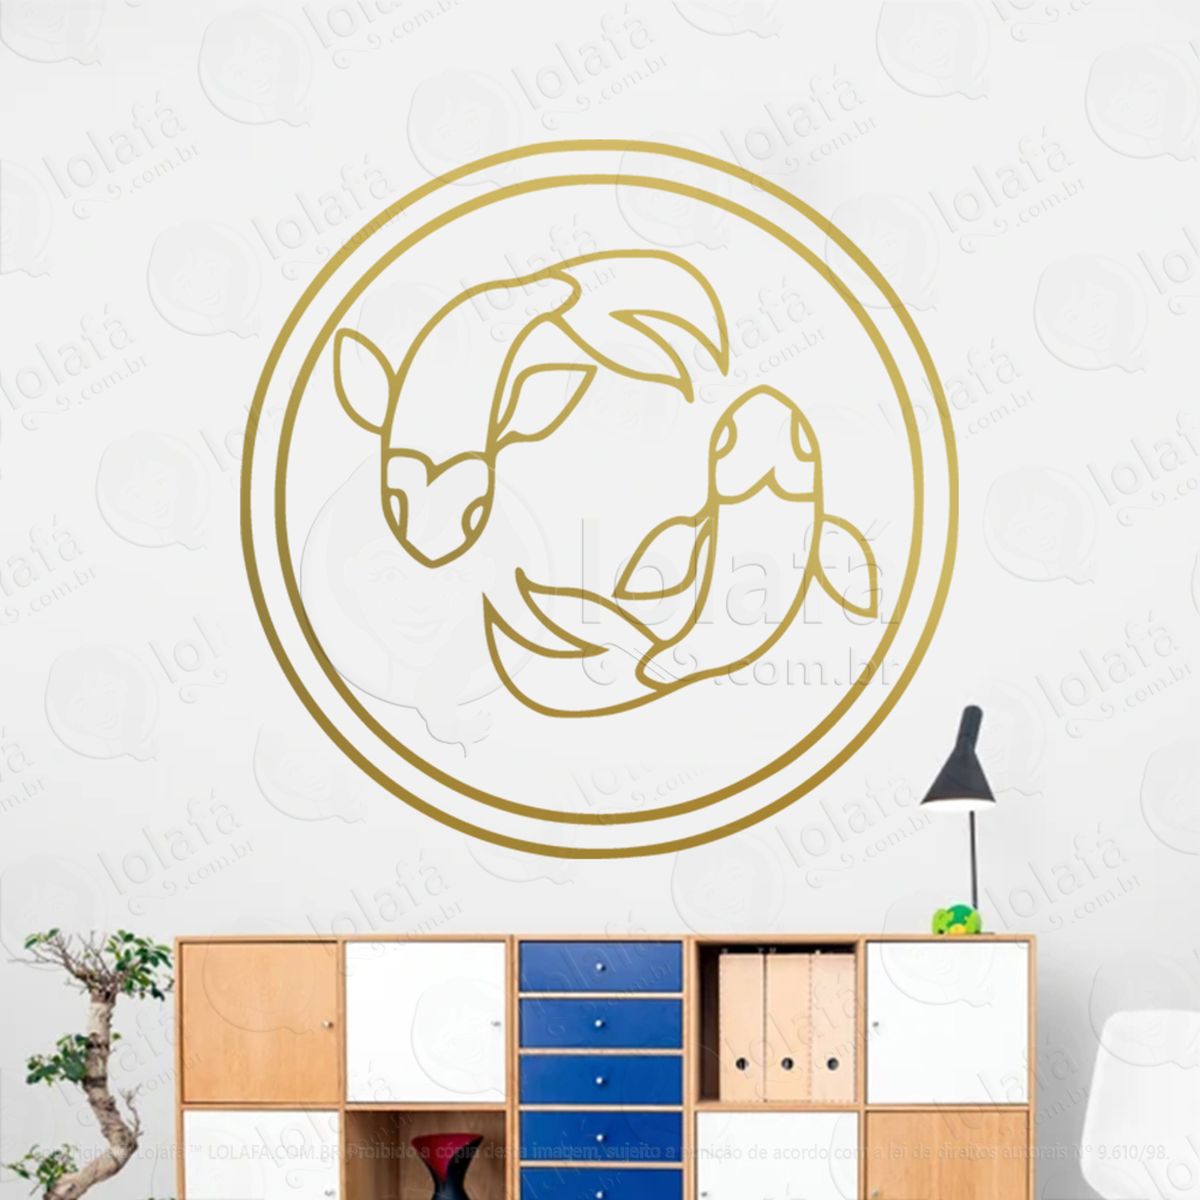 mandala signo de peixes astrologia pisces adesivo de parede decorativo para casa, sala, quarto, vidro e altar ocultista - mod:226